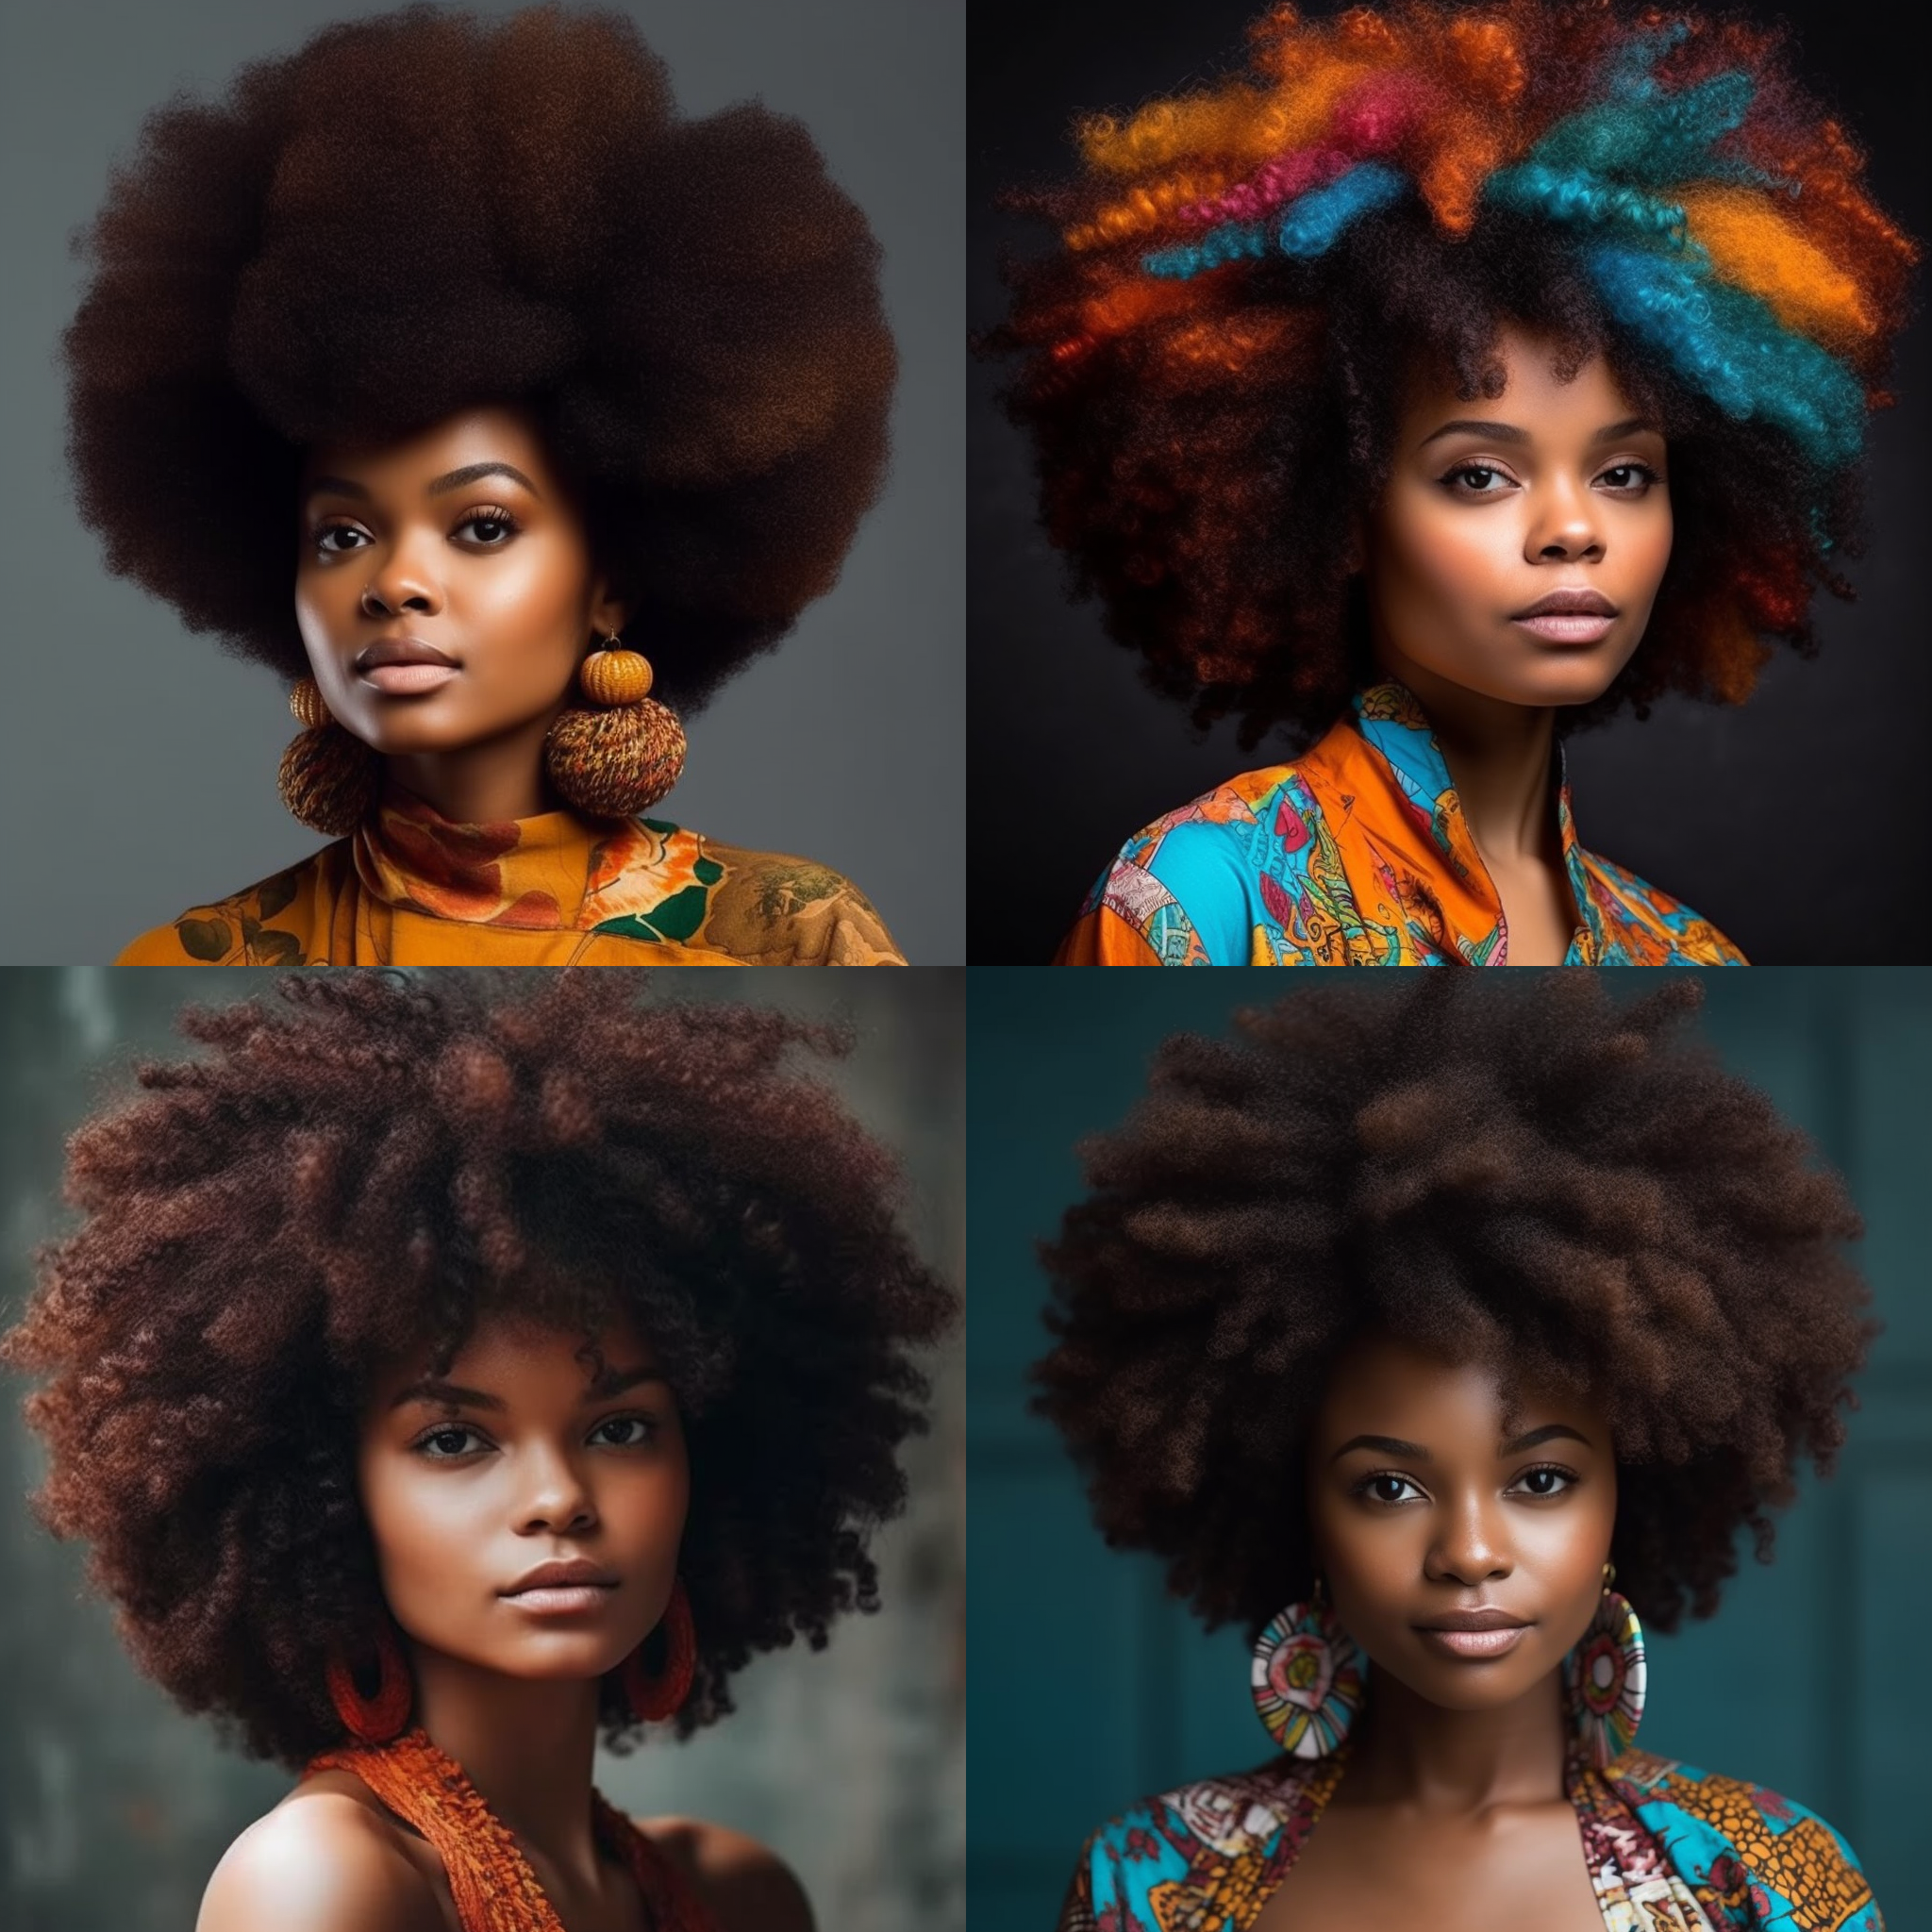 meowithai Afro Hair Style 2a8d5ced daeb 4412 84c1 8b6fa9b5e1b0